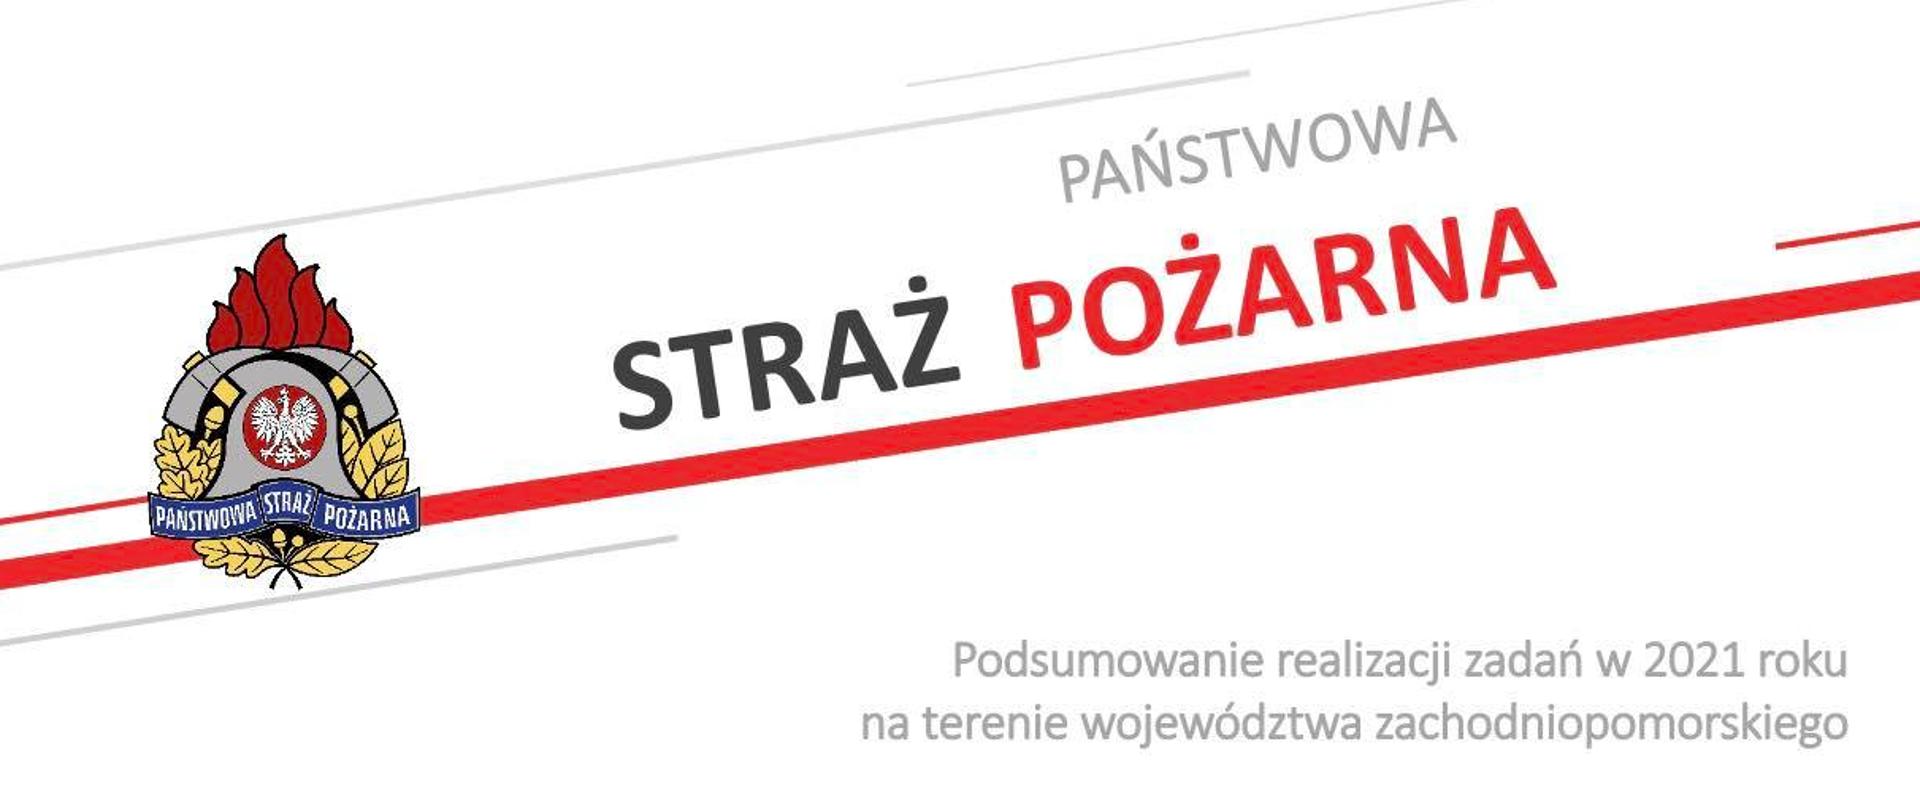 Logo PSP wraz z napisami przewodnimi dotyczącymi podsumowania realizacji zadań w 2021 roku 